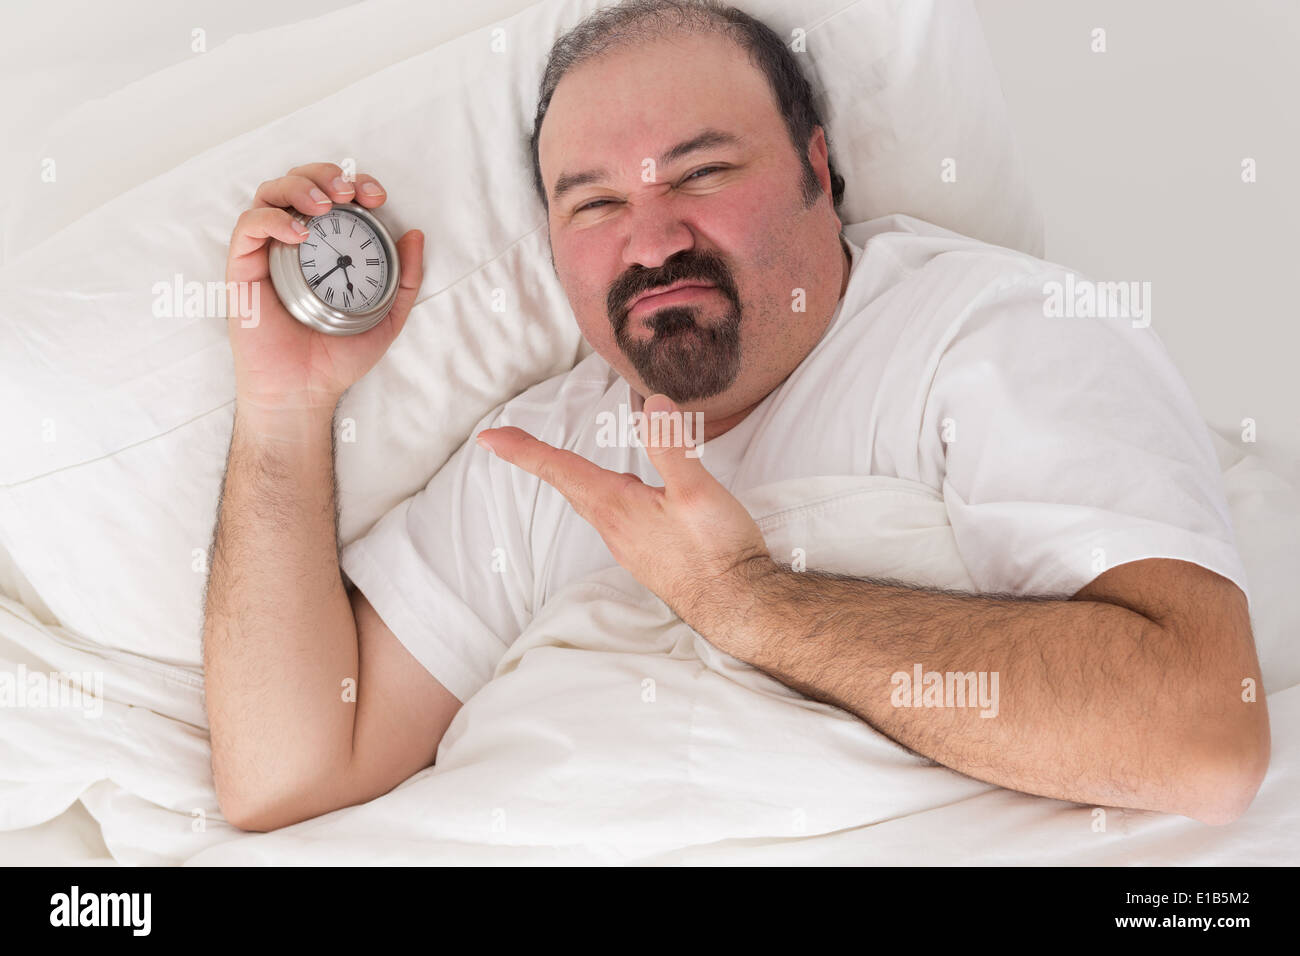 Mediana edad hombre barbado mantuvieron despierto por vecinos ruidosos acostado en la cama sonriendo y apuntando a la hora en su reloj de alarma Foto de stock